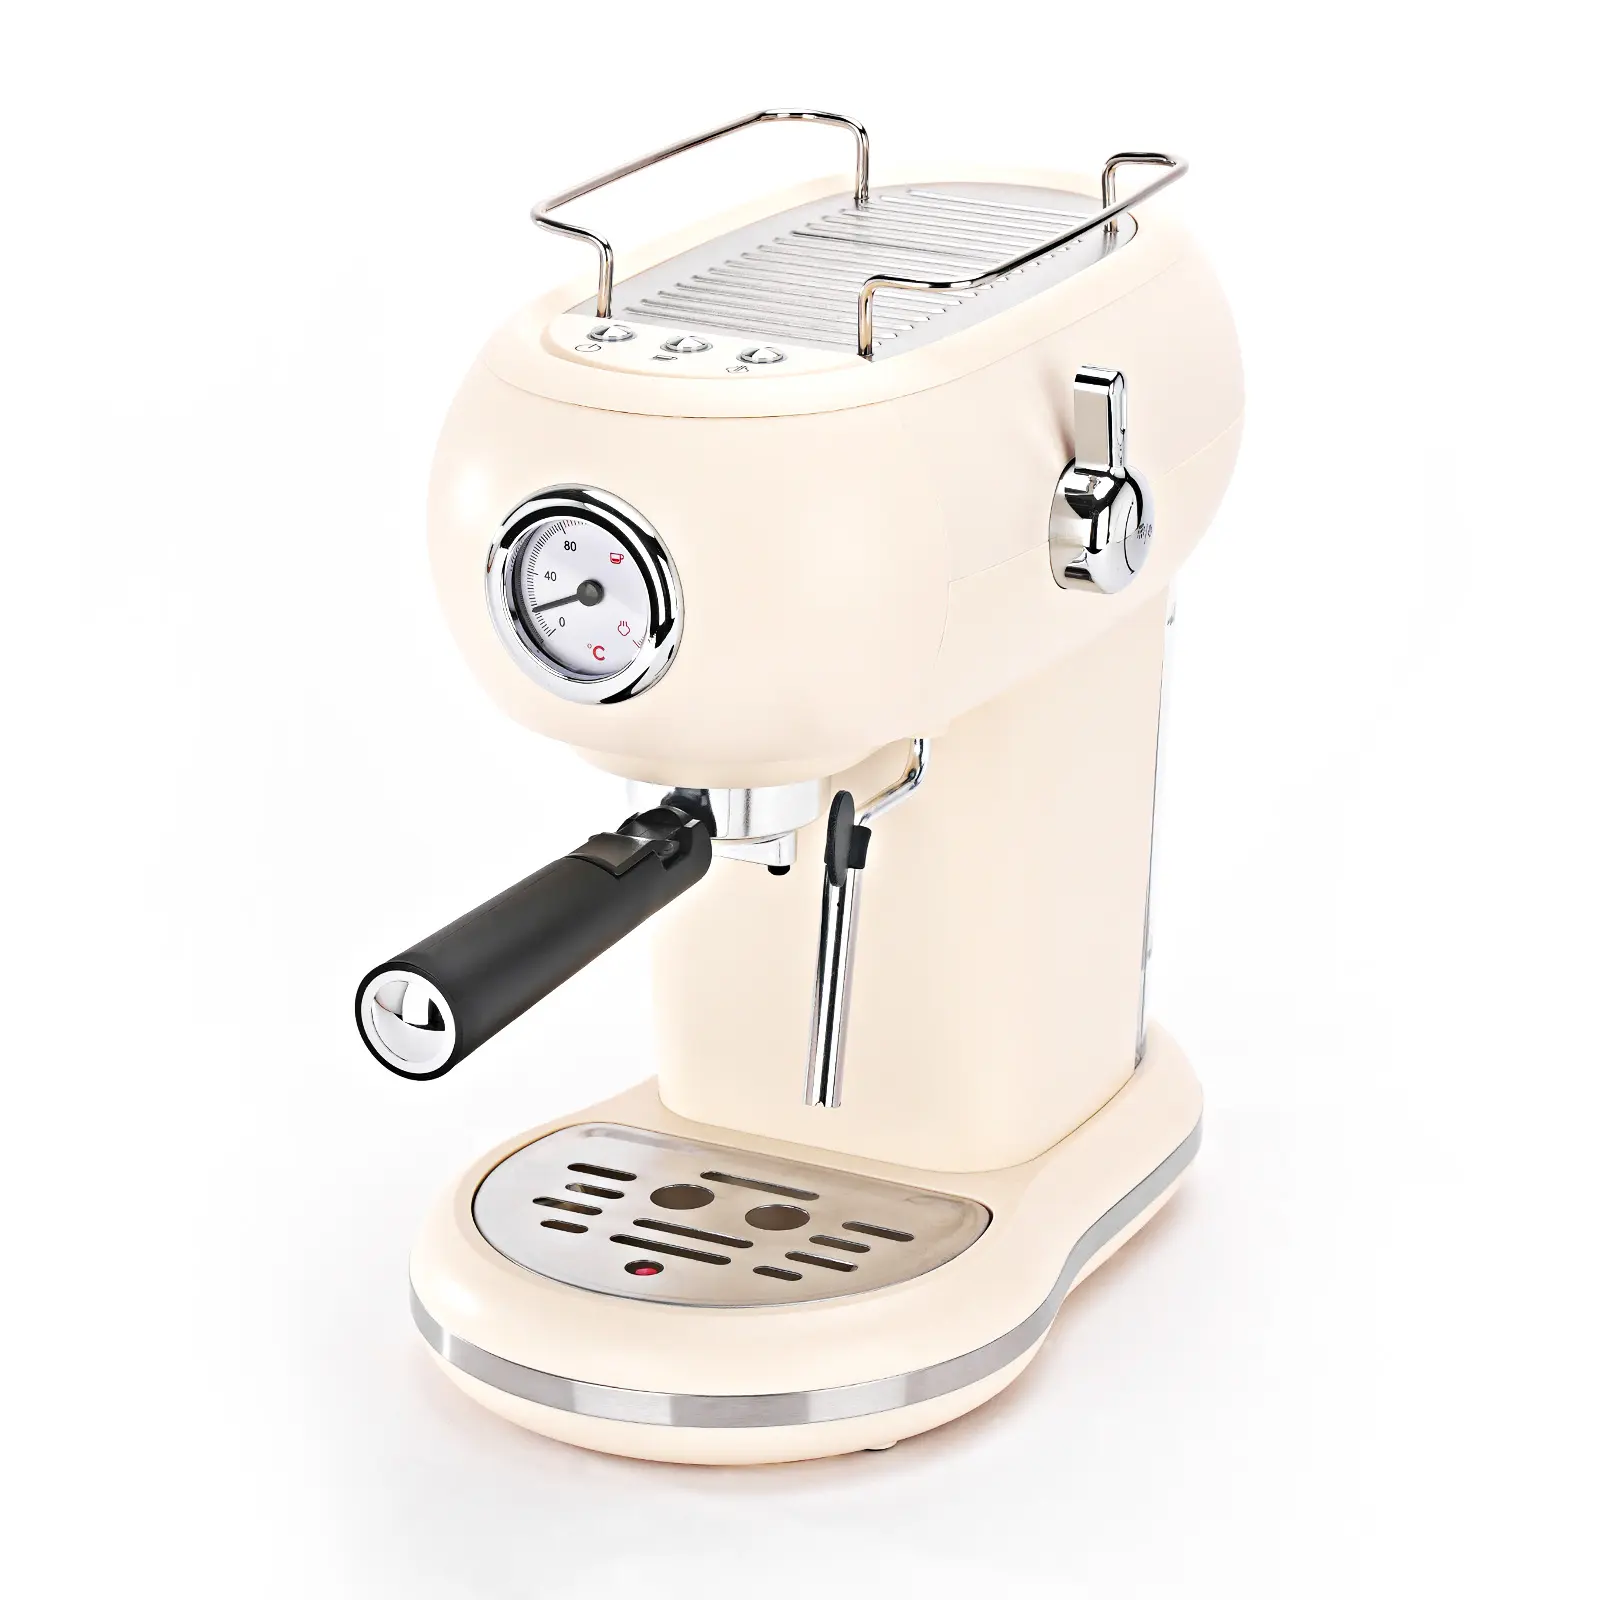 ماكينة قهوة كهربائية جديدة 15 بار كابتشينو ، ماكينة صنع قهوة إسبريسو